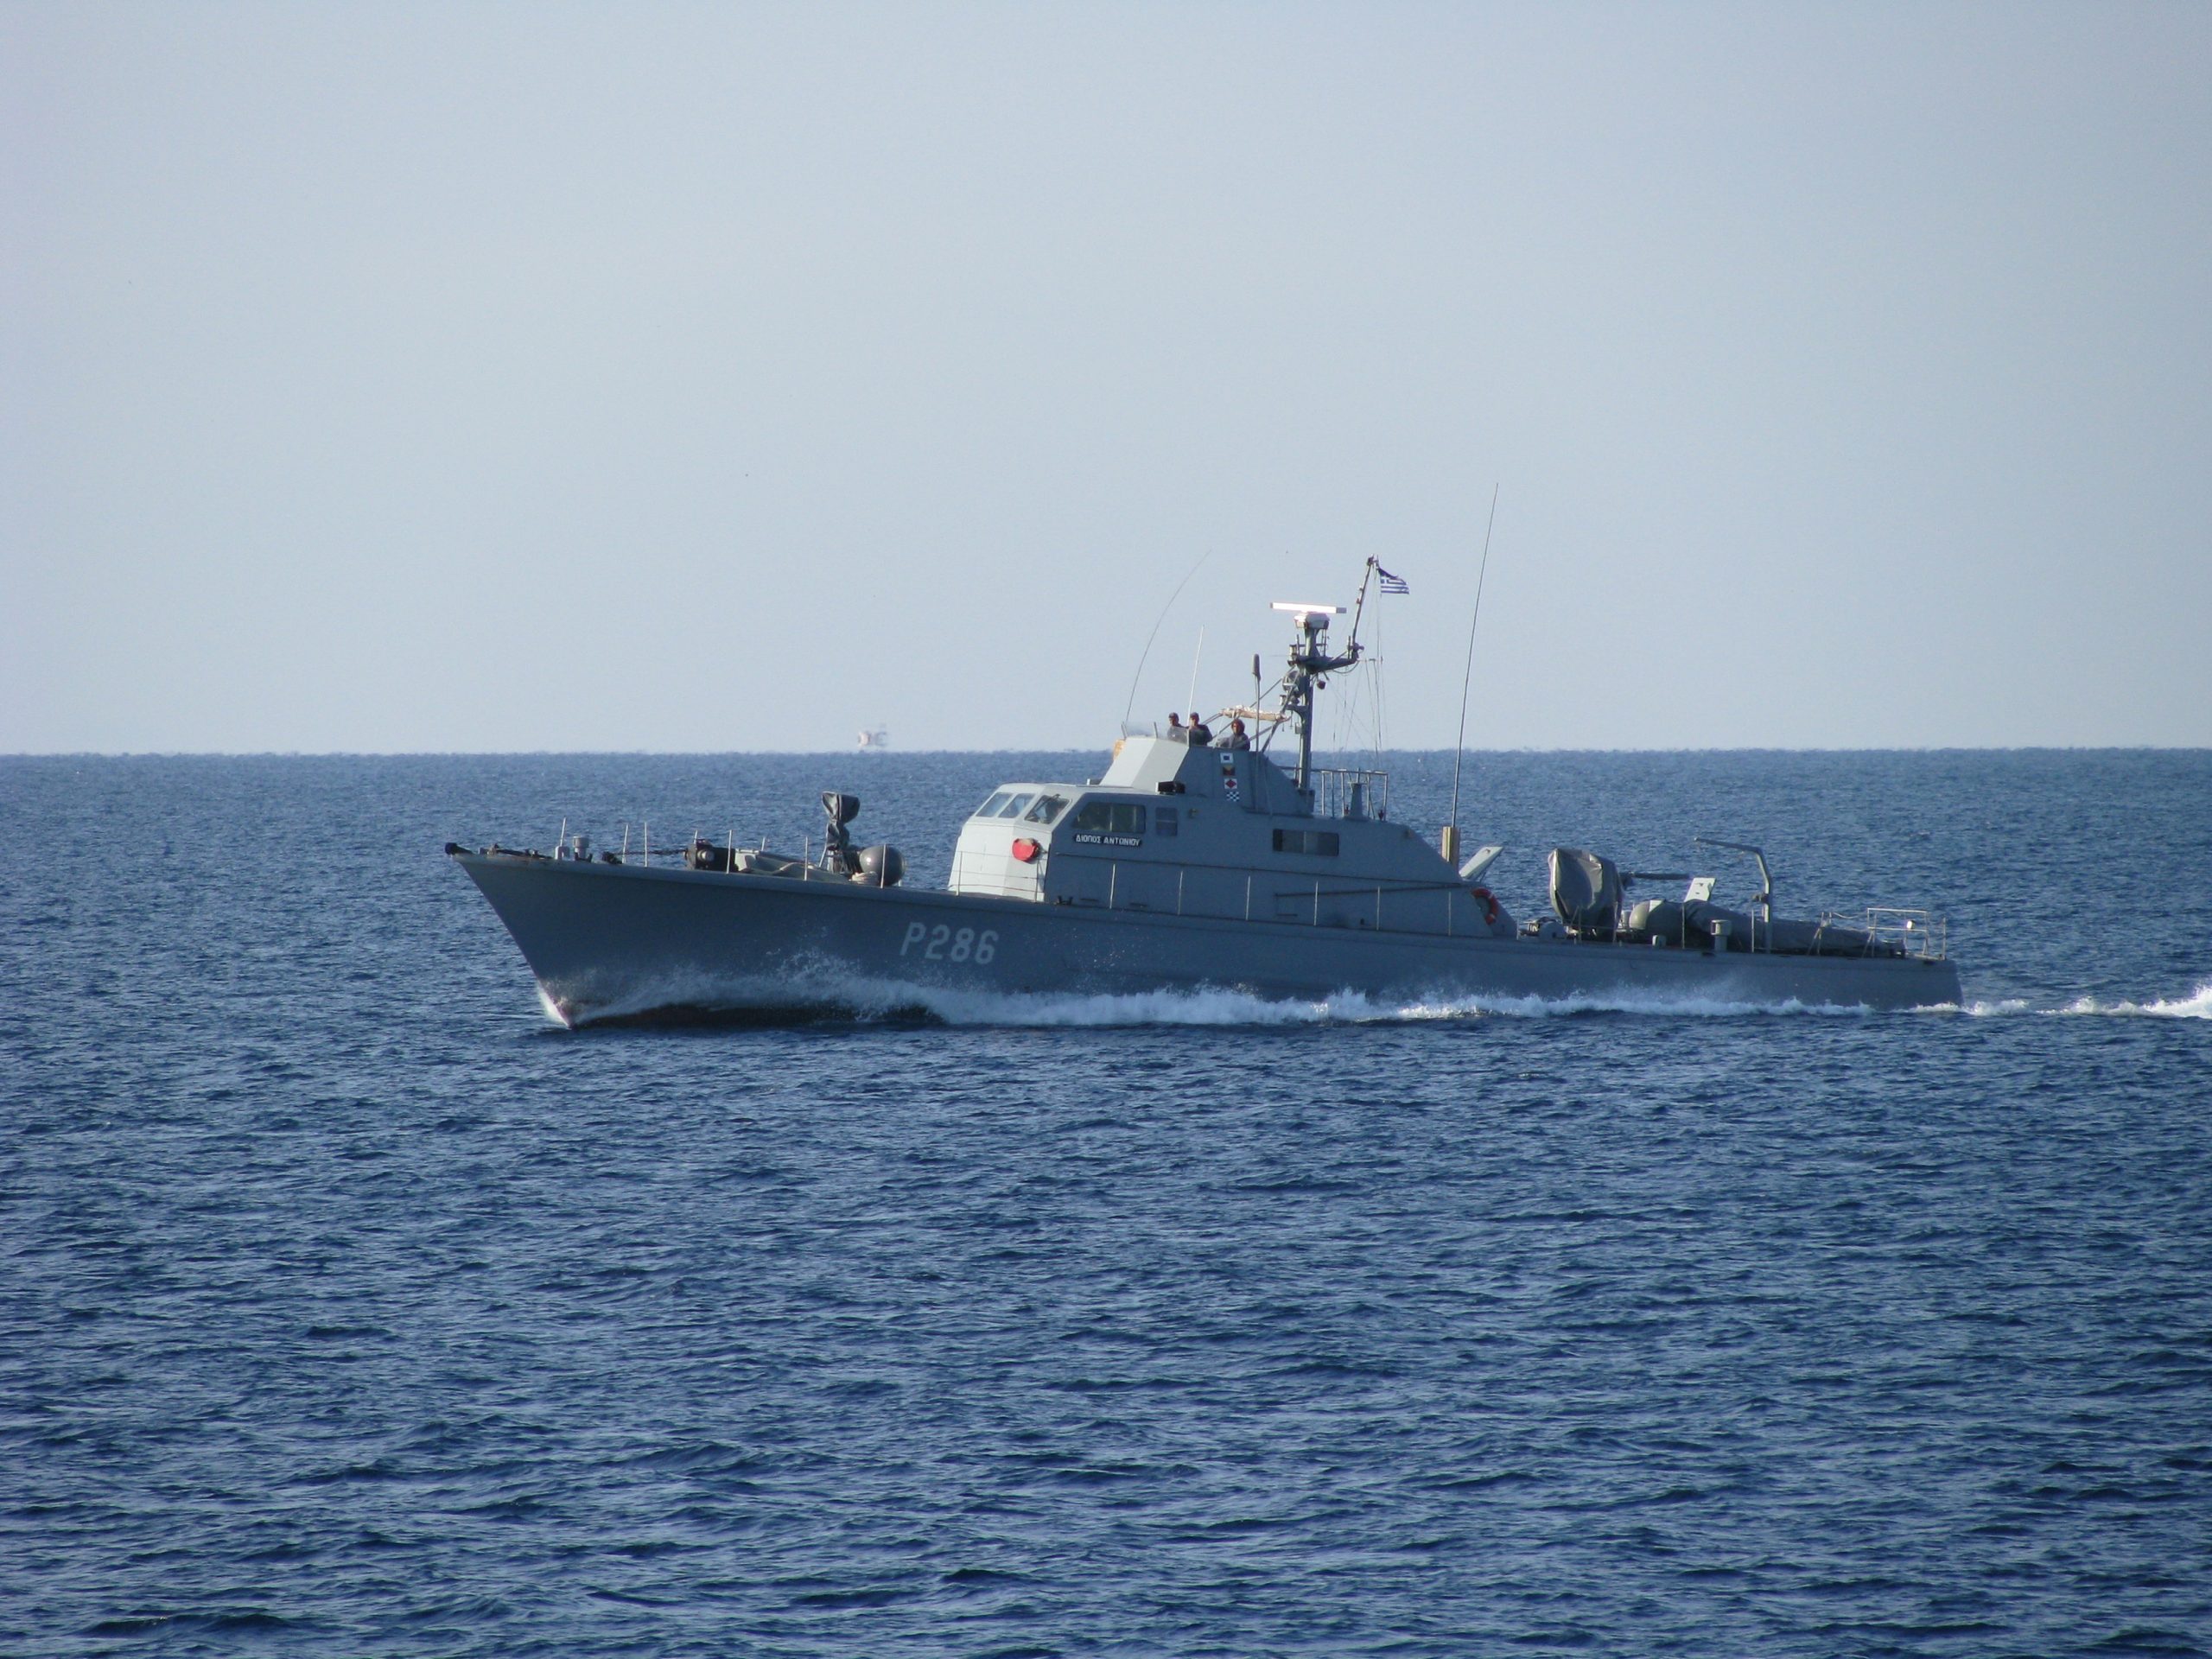 Πολεμικό σκάφος στις ακτές της Νέας Μάκρης χωρίς σημαία;